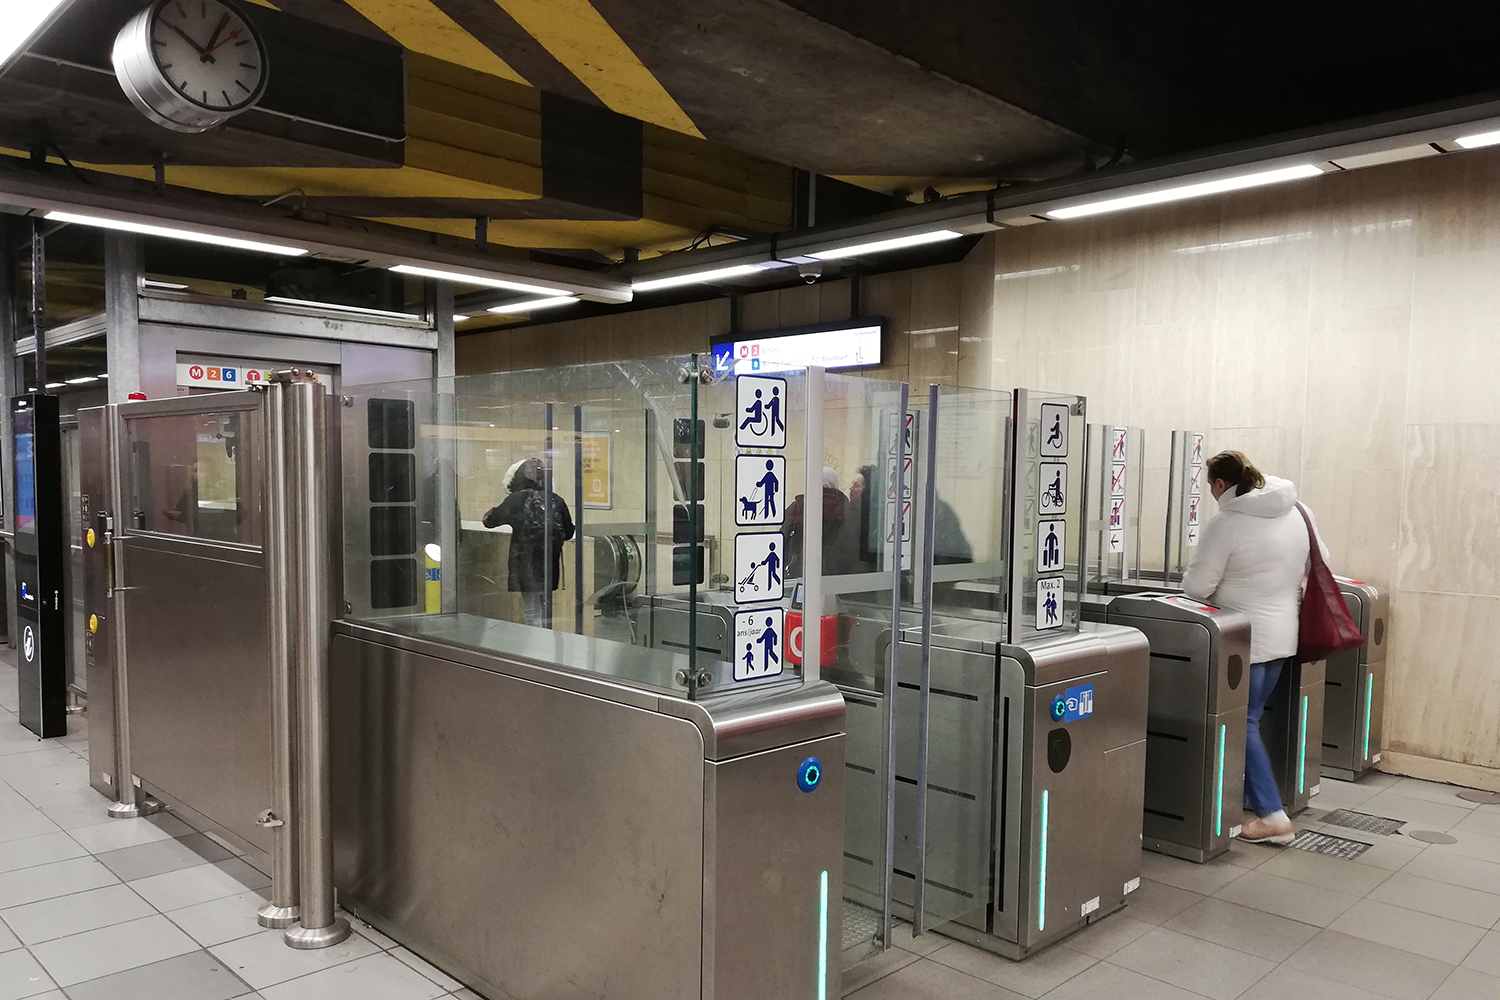 Arrivée à Bruxelles, il faut prendre le métro pour rejoindre l’arrêt Maelbeek.